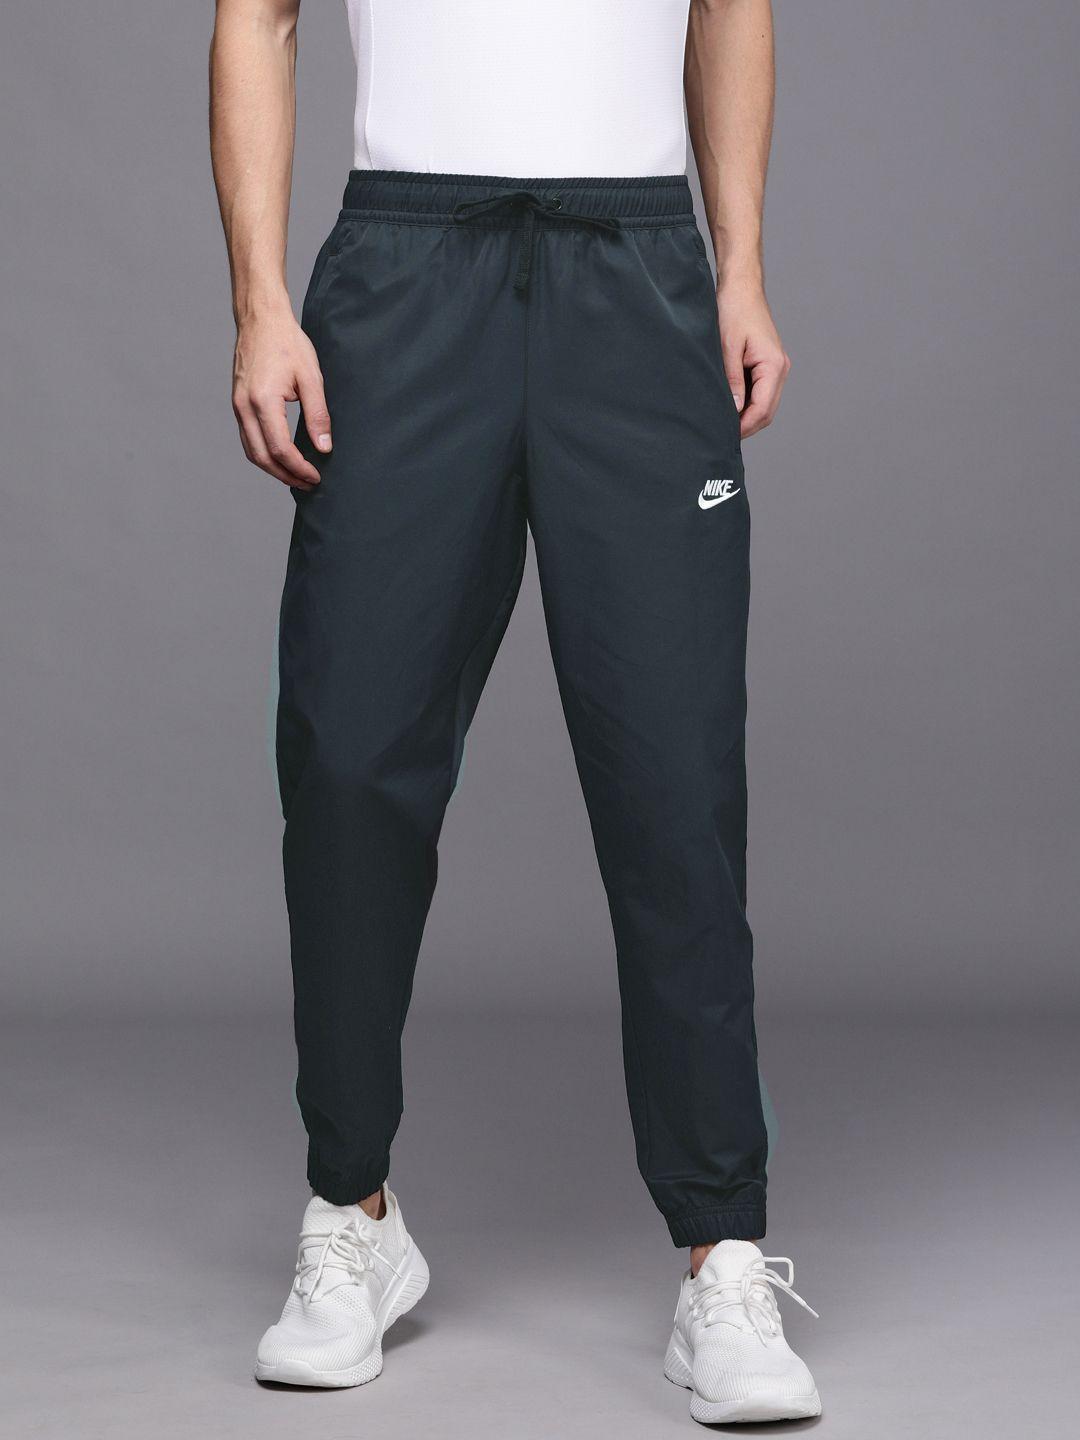 nike-sportswear-men-black-core-track-pants